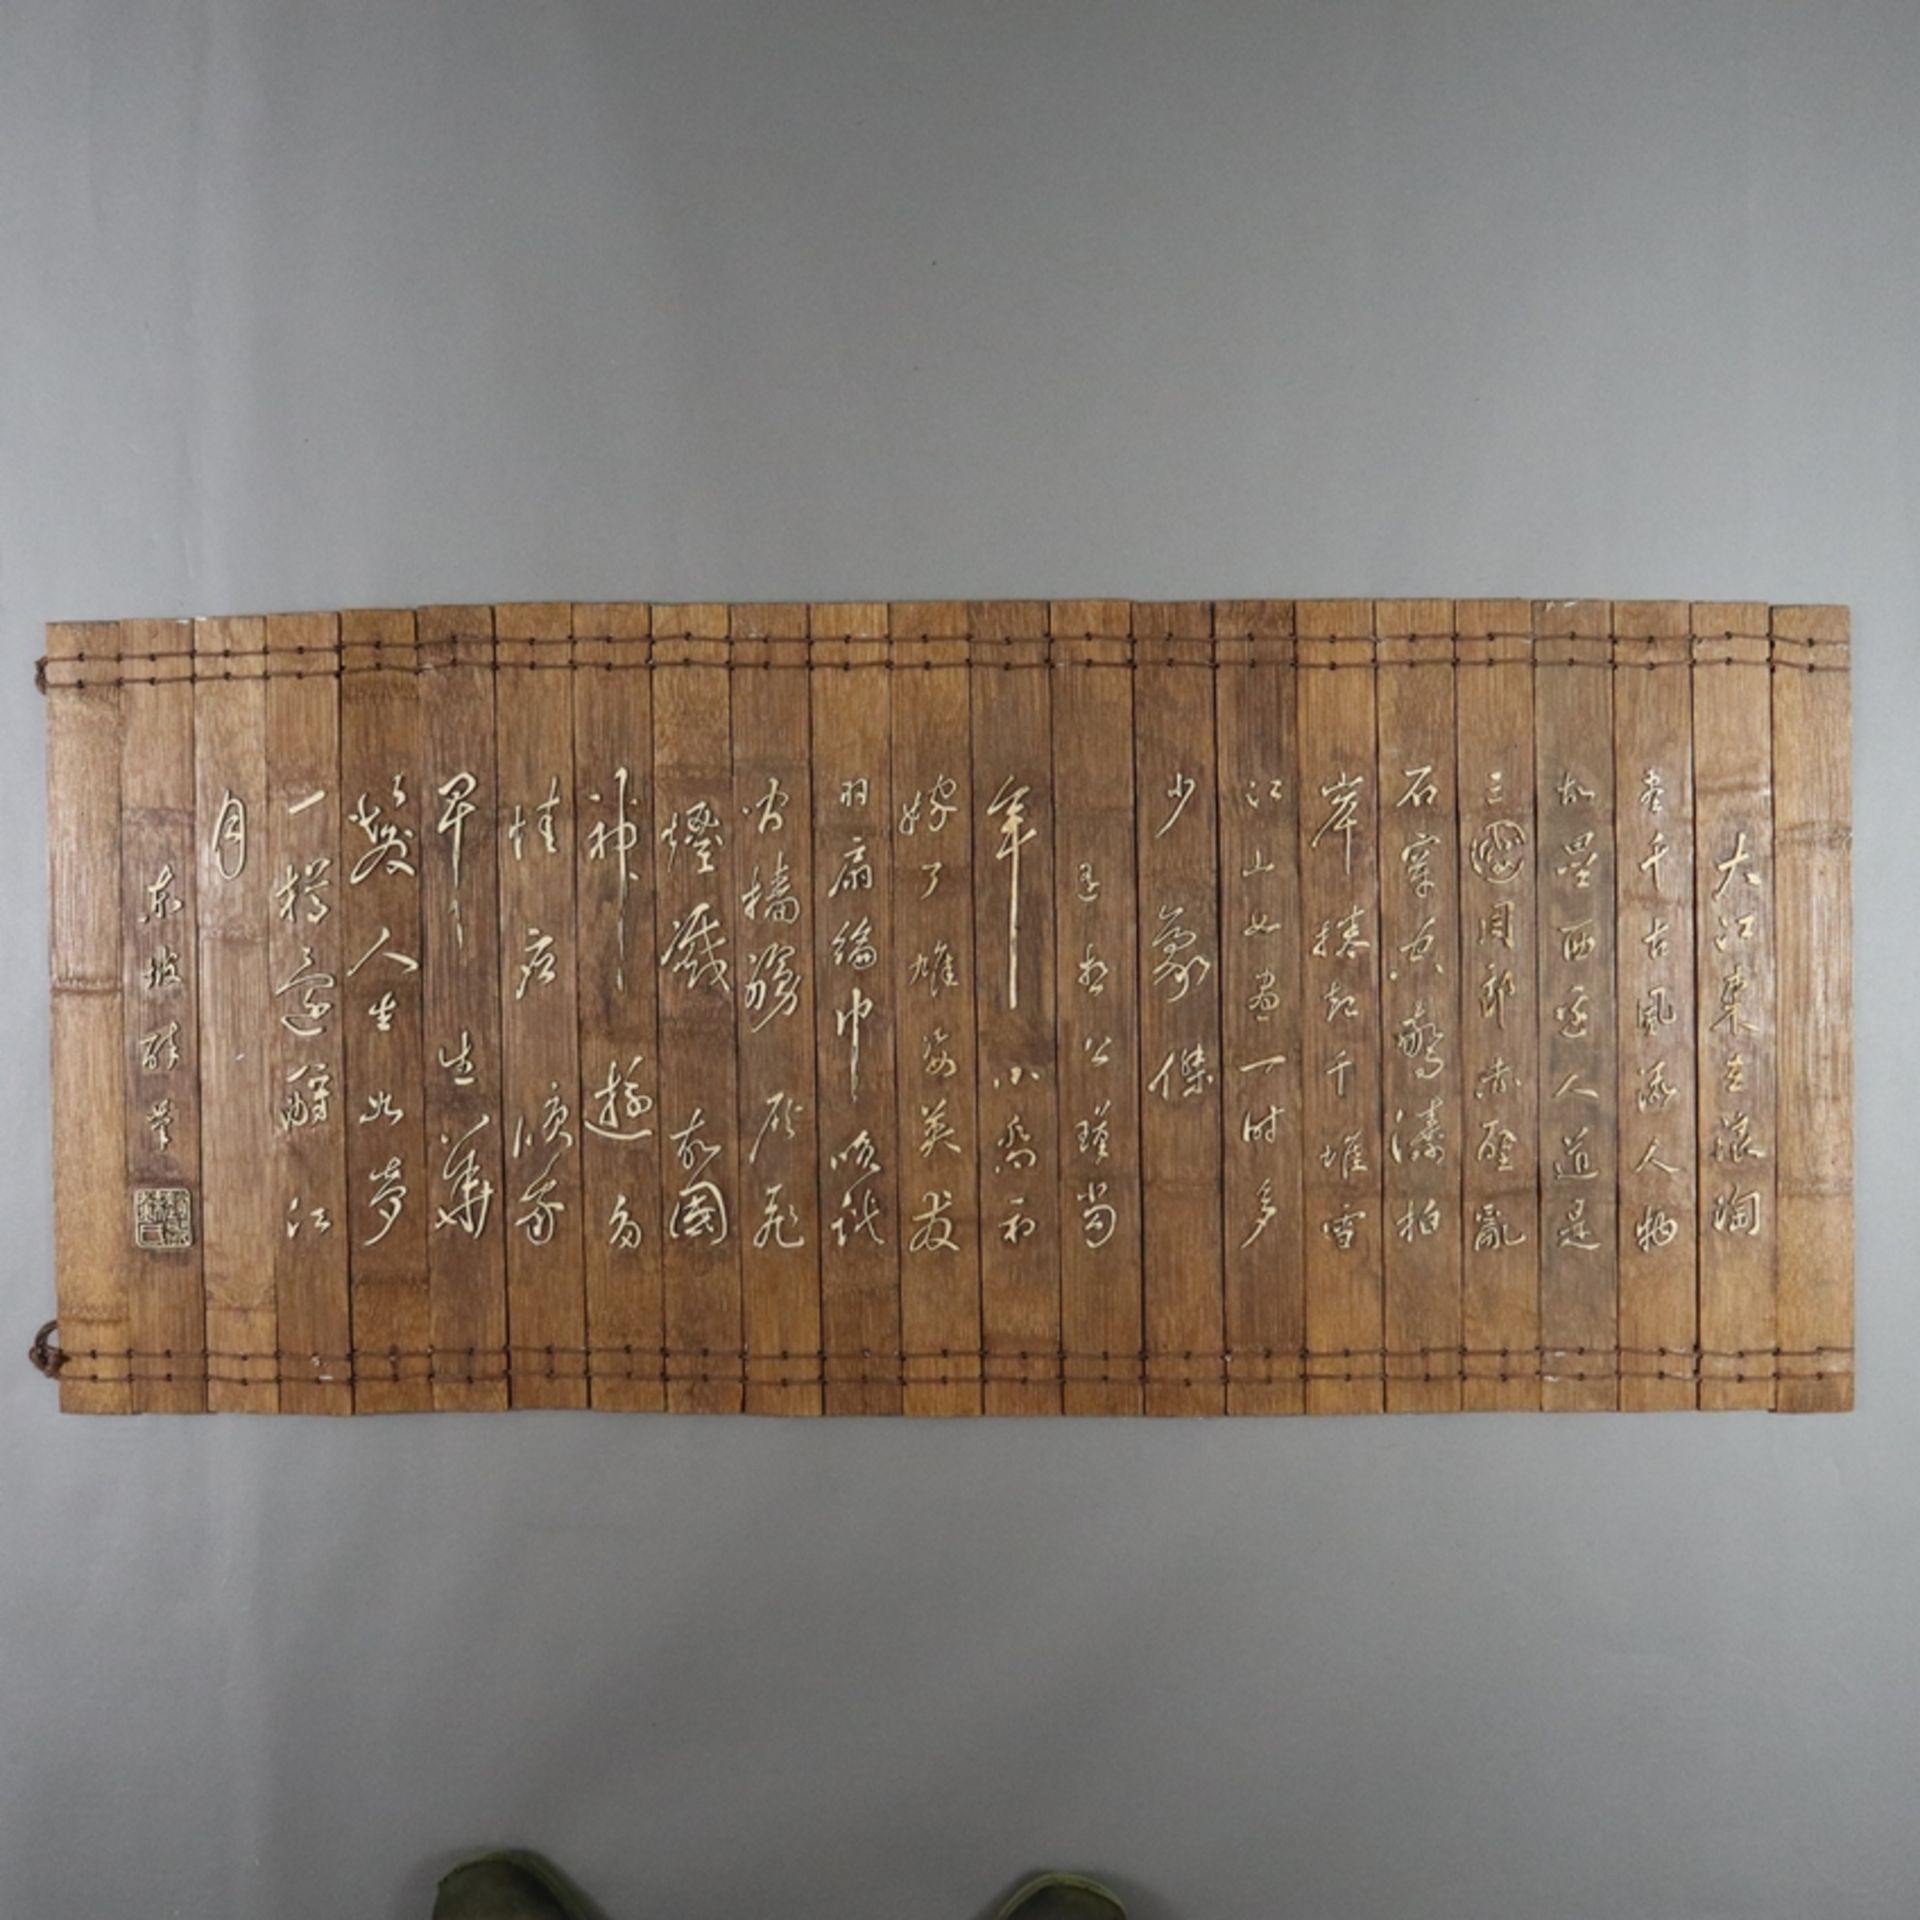 Bambusbuch mit Textzeilen - China, Qing-Dynastie, 19.Jh., 23 miteinander verbundene breite Lamellen